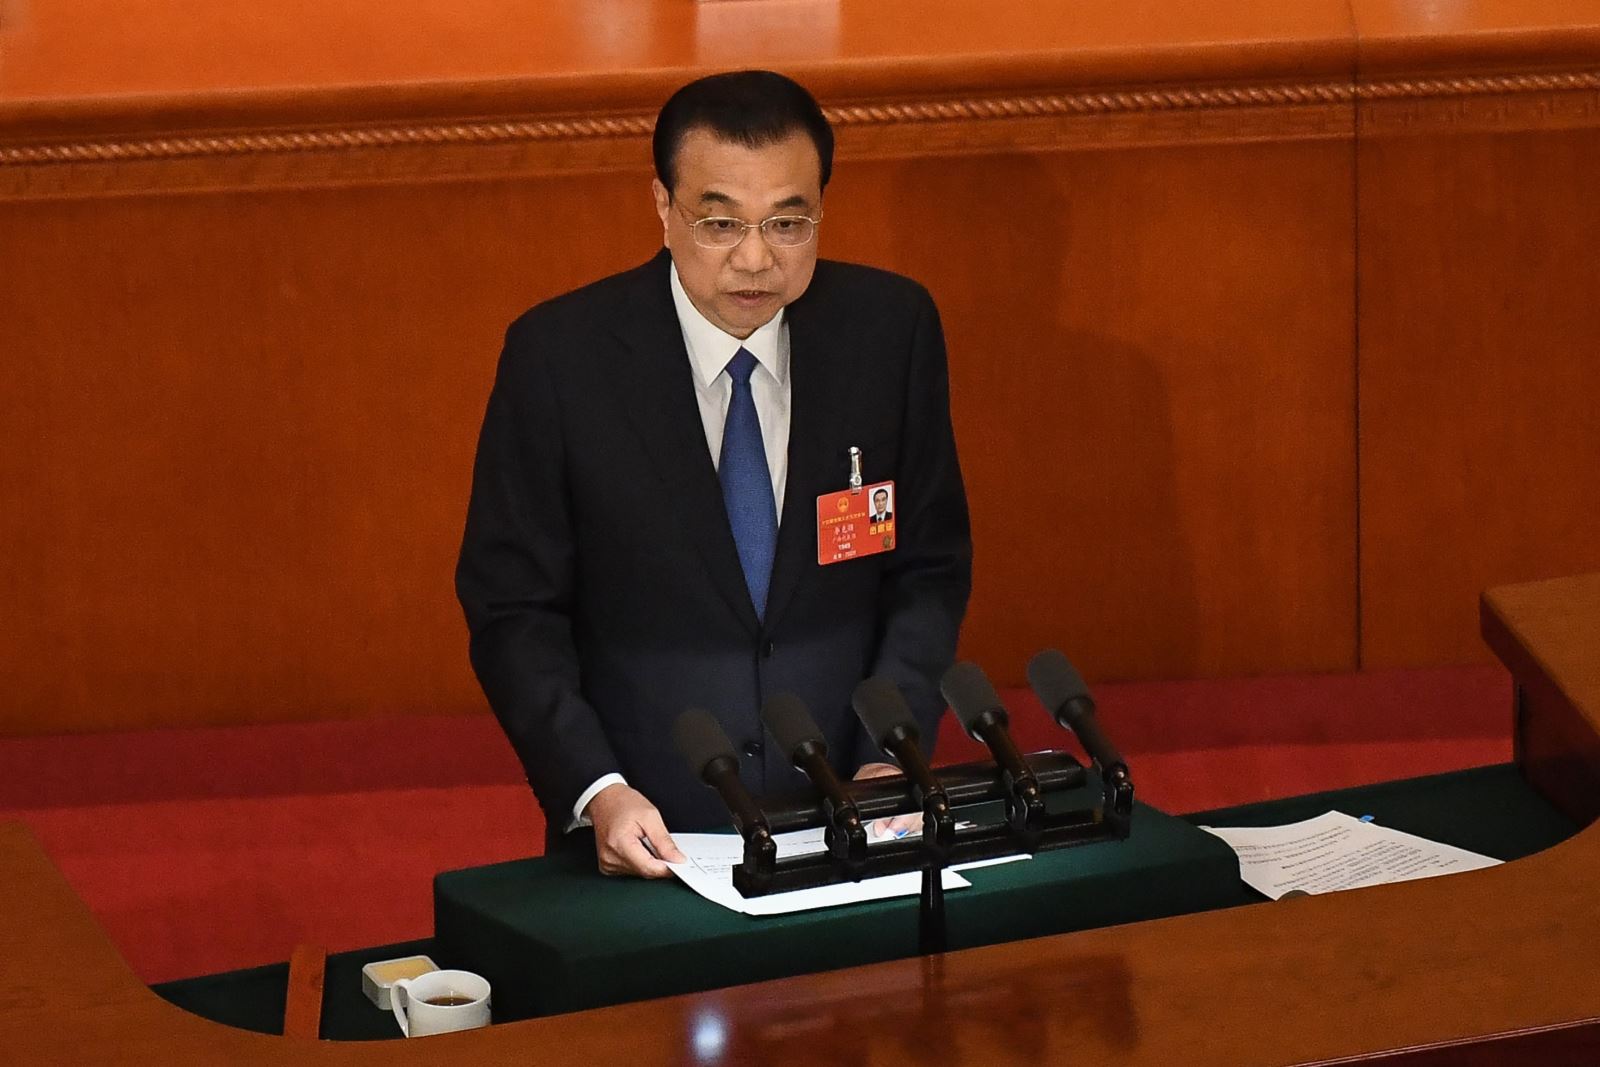 Kinh tế - Vấn đề trọng tâm trong Kỳ họp thứ ba Quốc hội Trung Quốc Khóa XIII